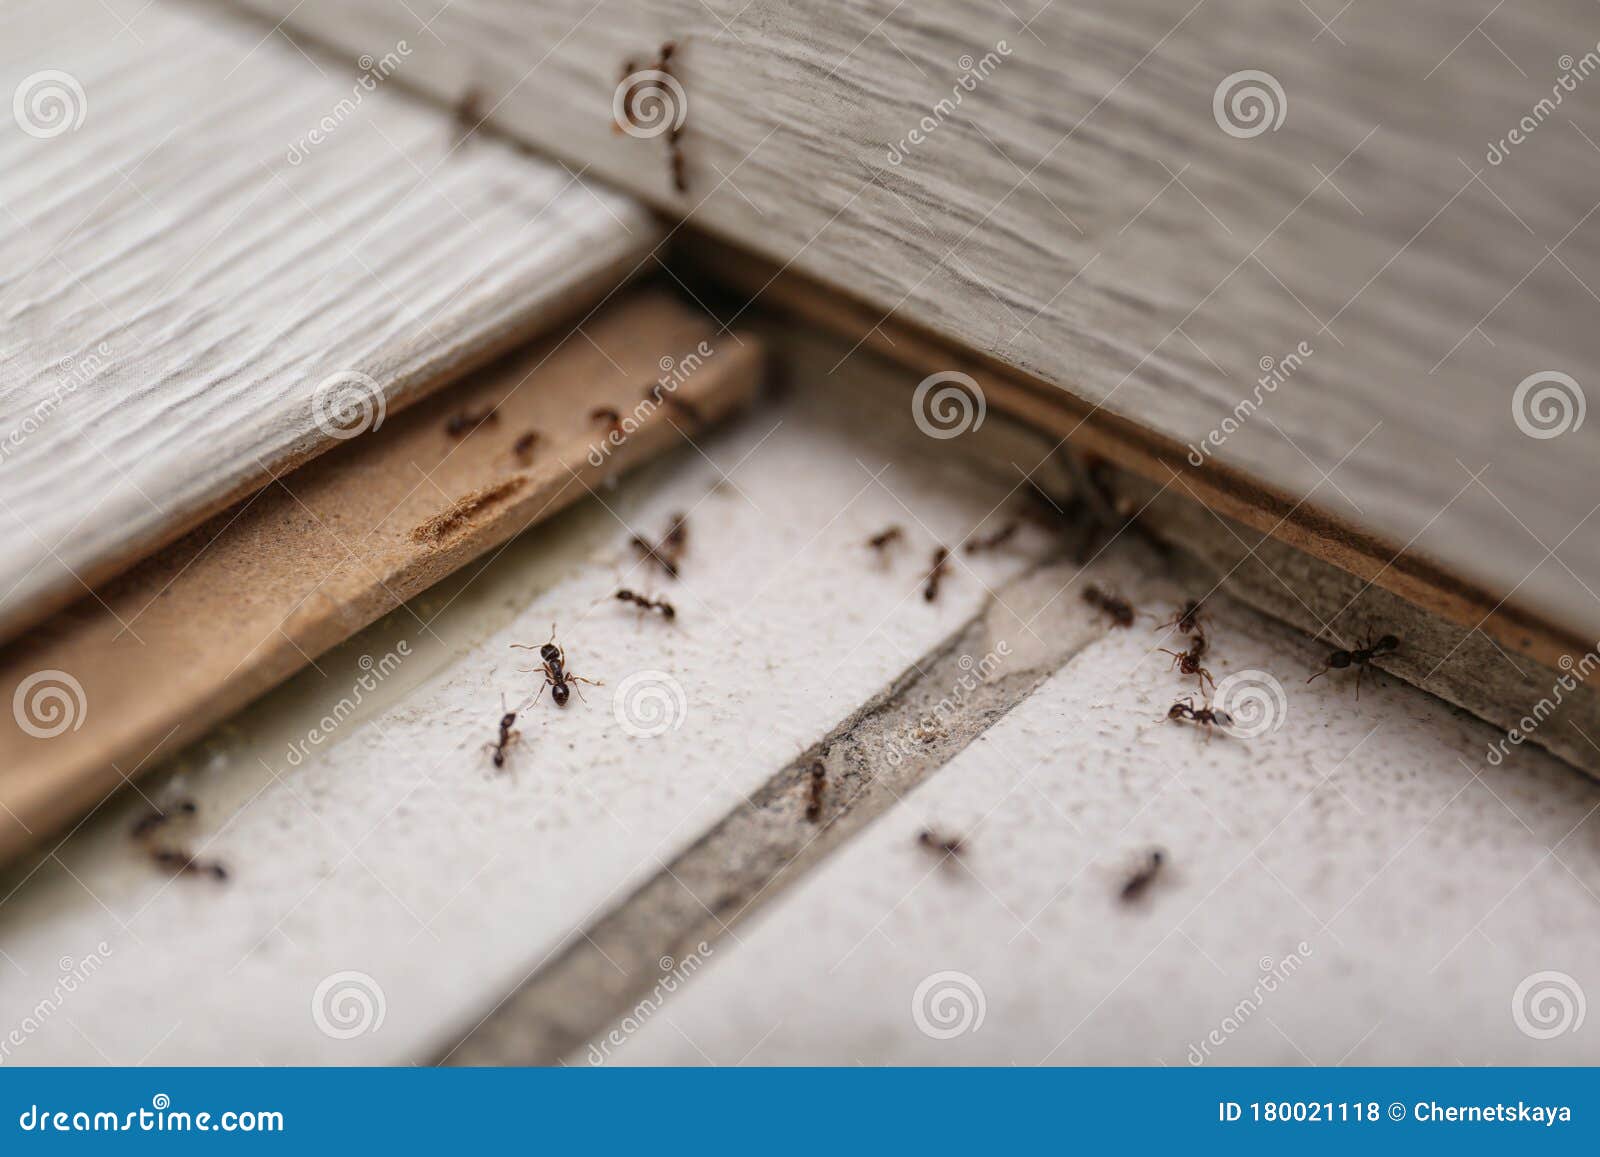 ants pest